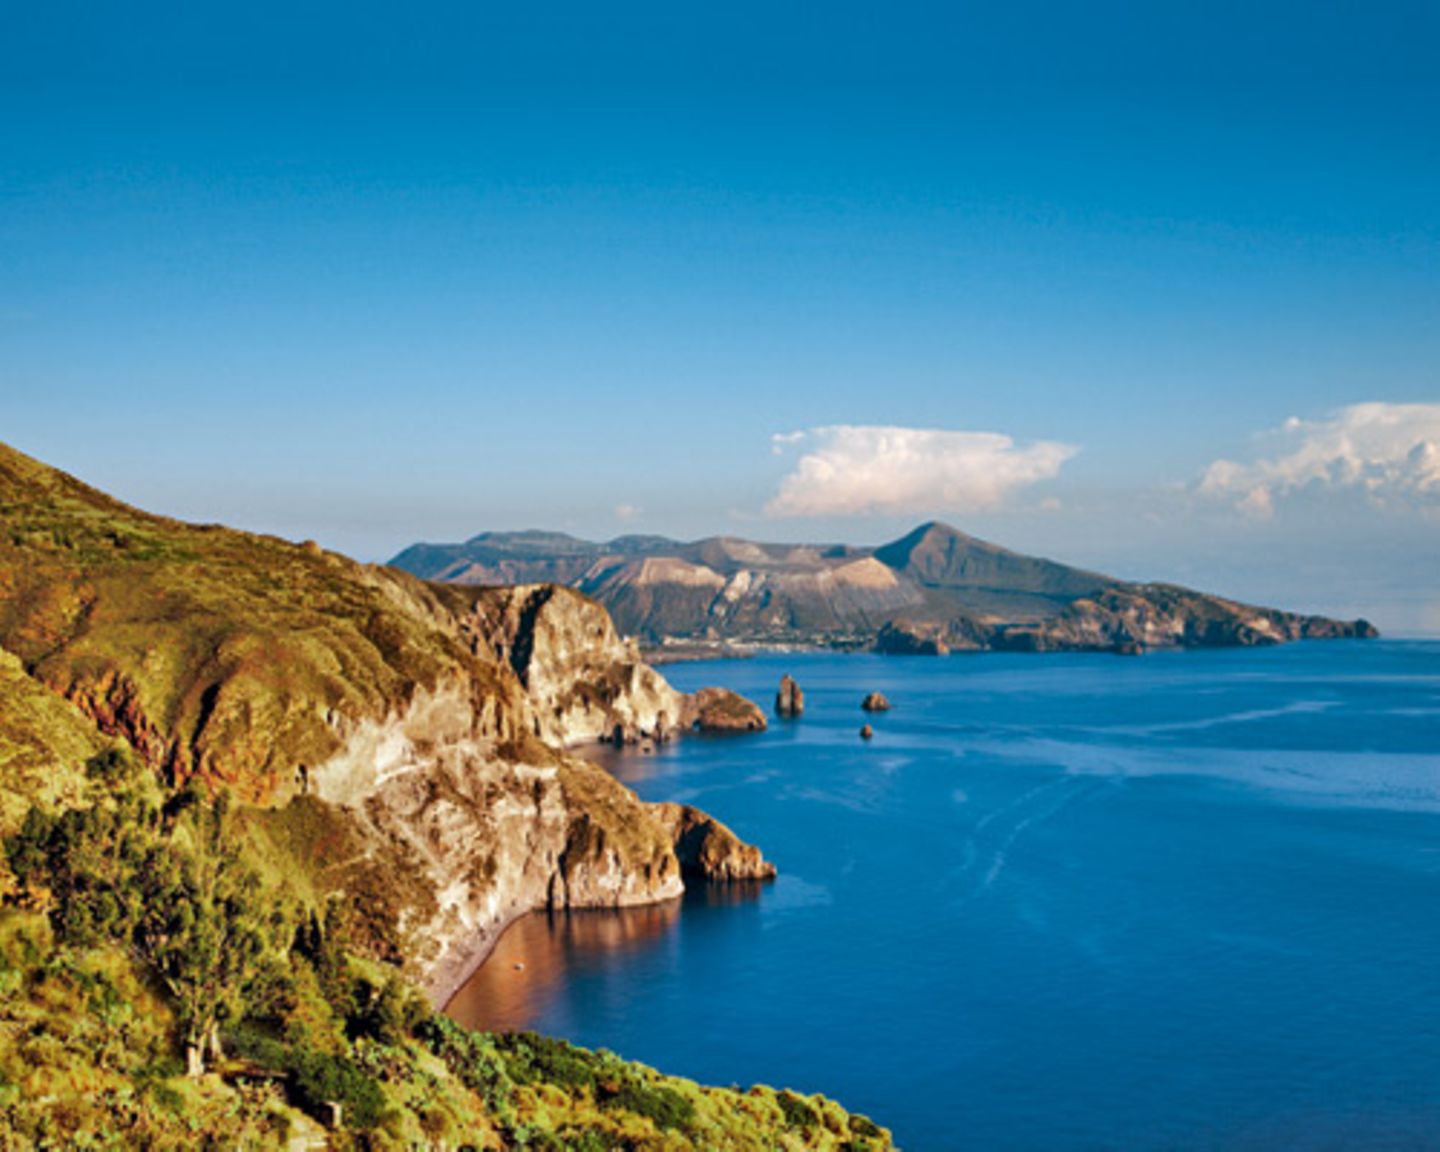 Sieben Inseln gehören zur Liparischen Gruppe nördlich von Sizilien. Entstanden aus Vulkan - heute ein besonderer Aussichtspunkt.